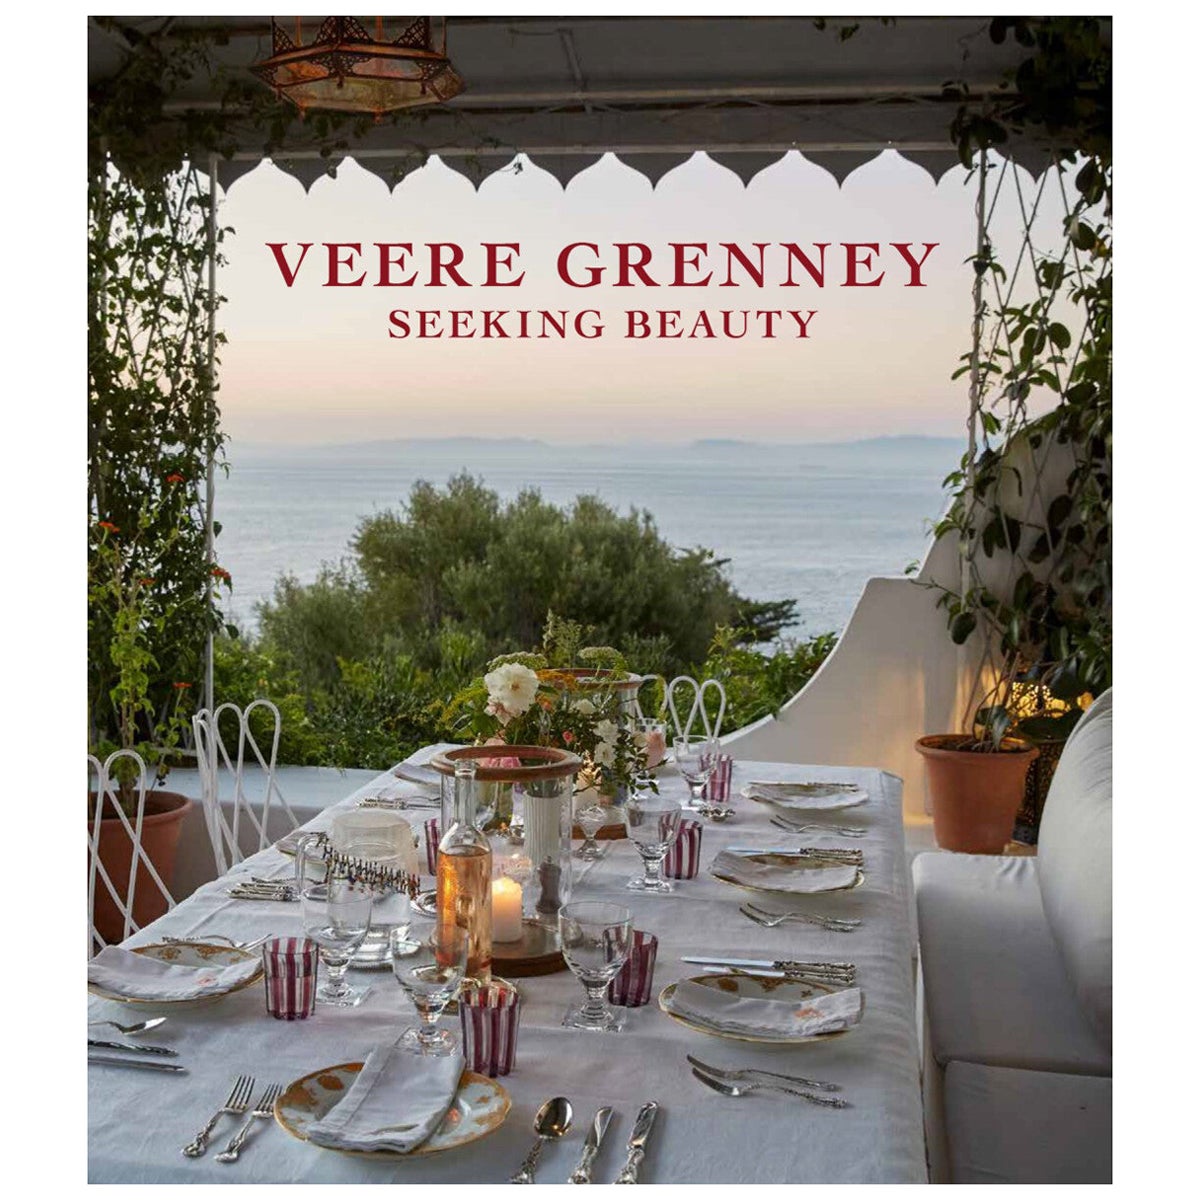 Veere Grenney Seeking Beauty, Buch „Seeking Beauty“ von Veere Grenney